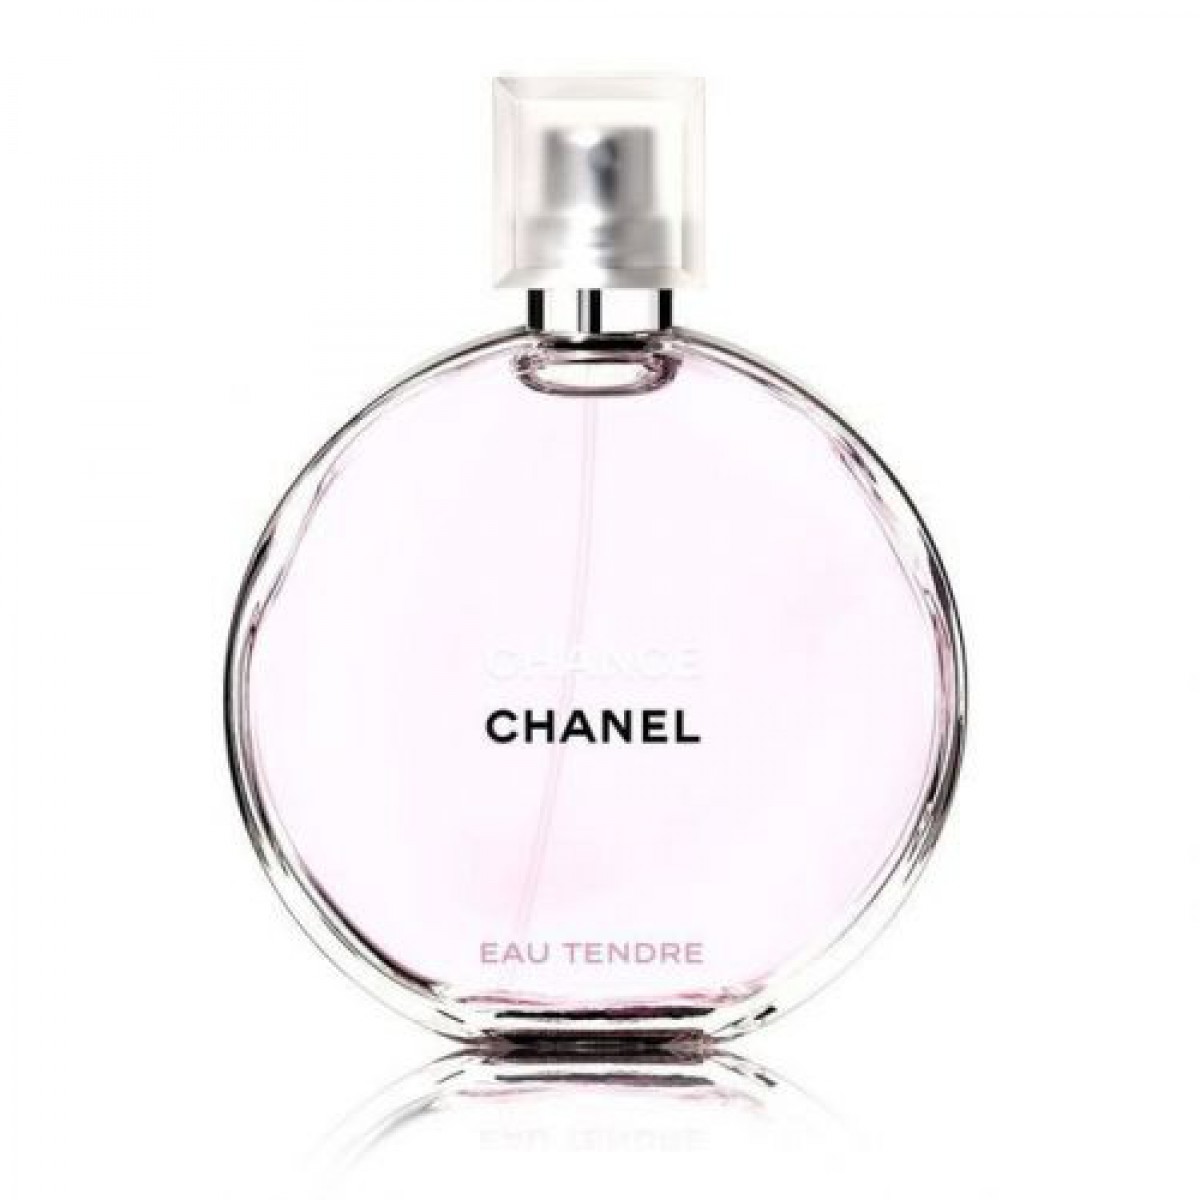 オトナだから特別な香りを♡1万円以内で買えるおすすめブランド香水8選